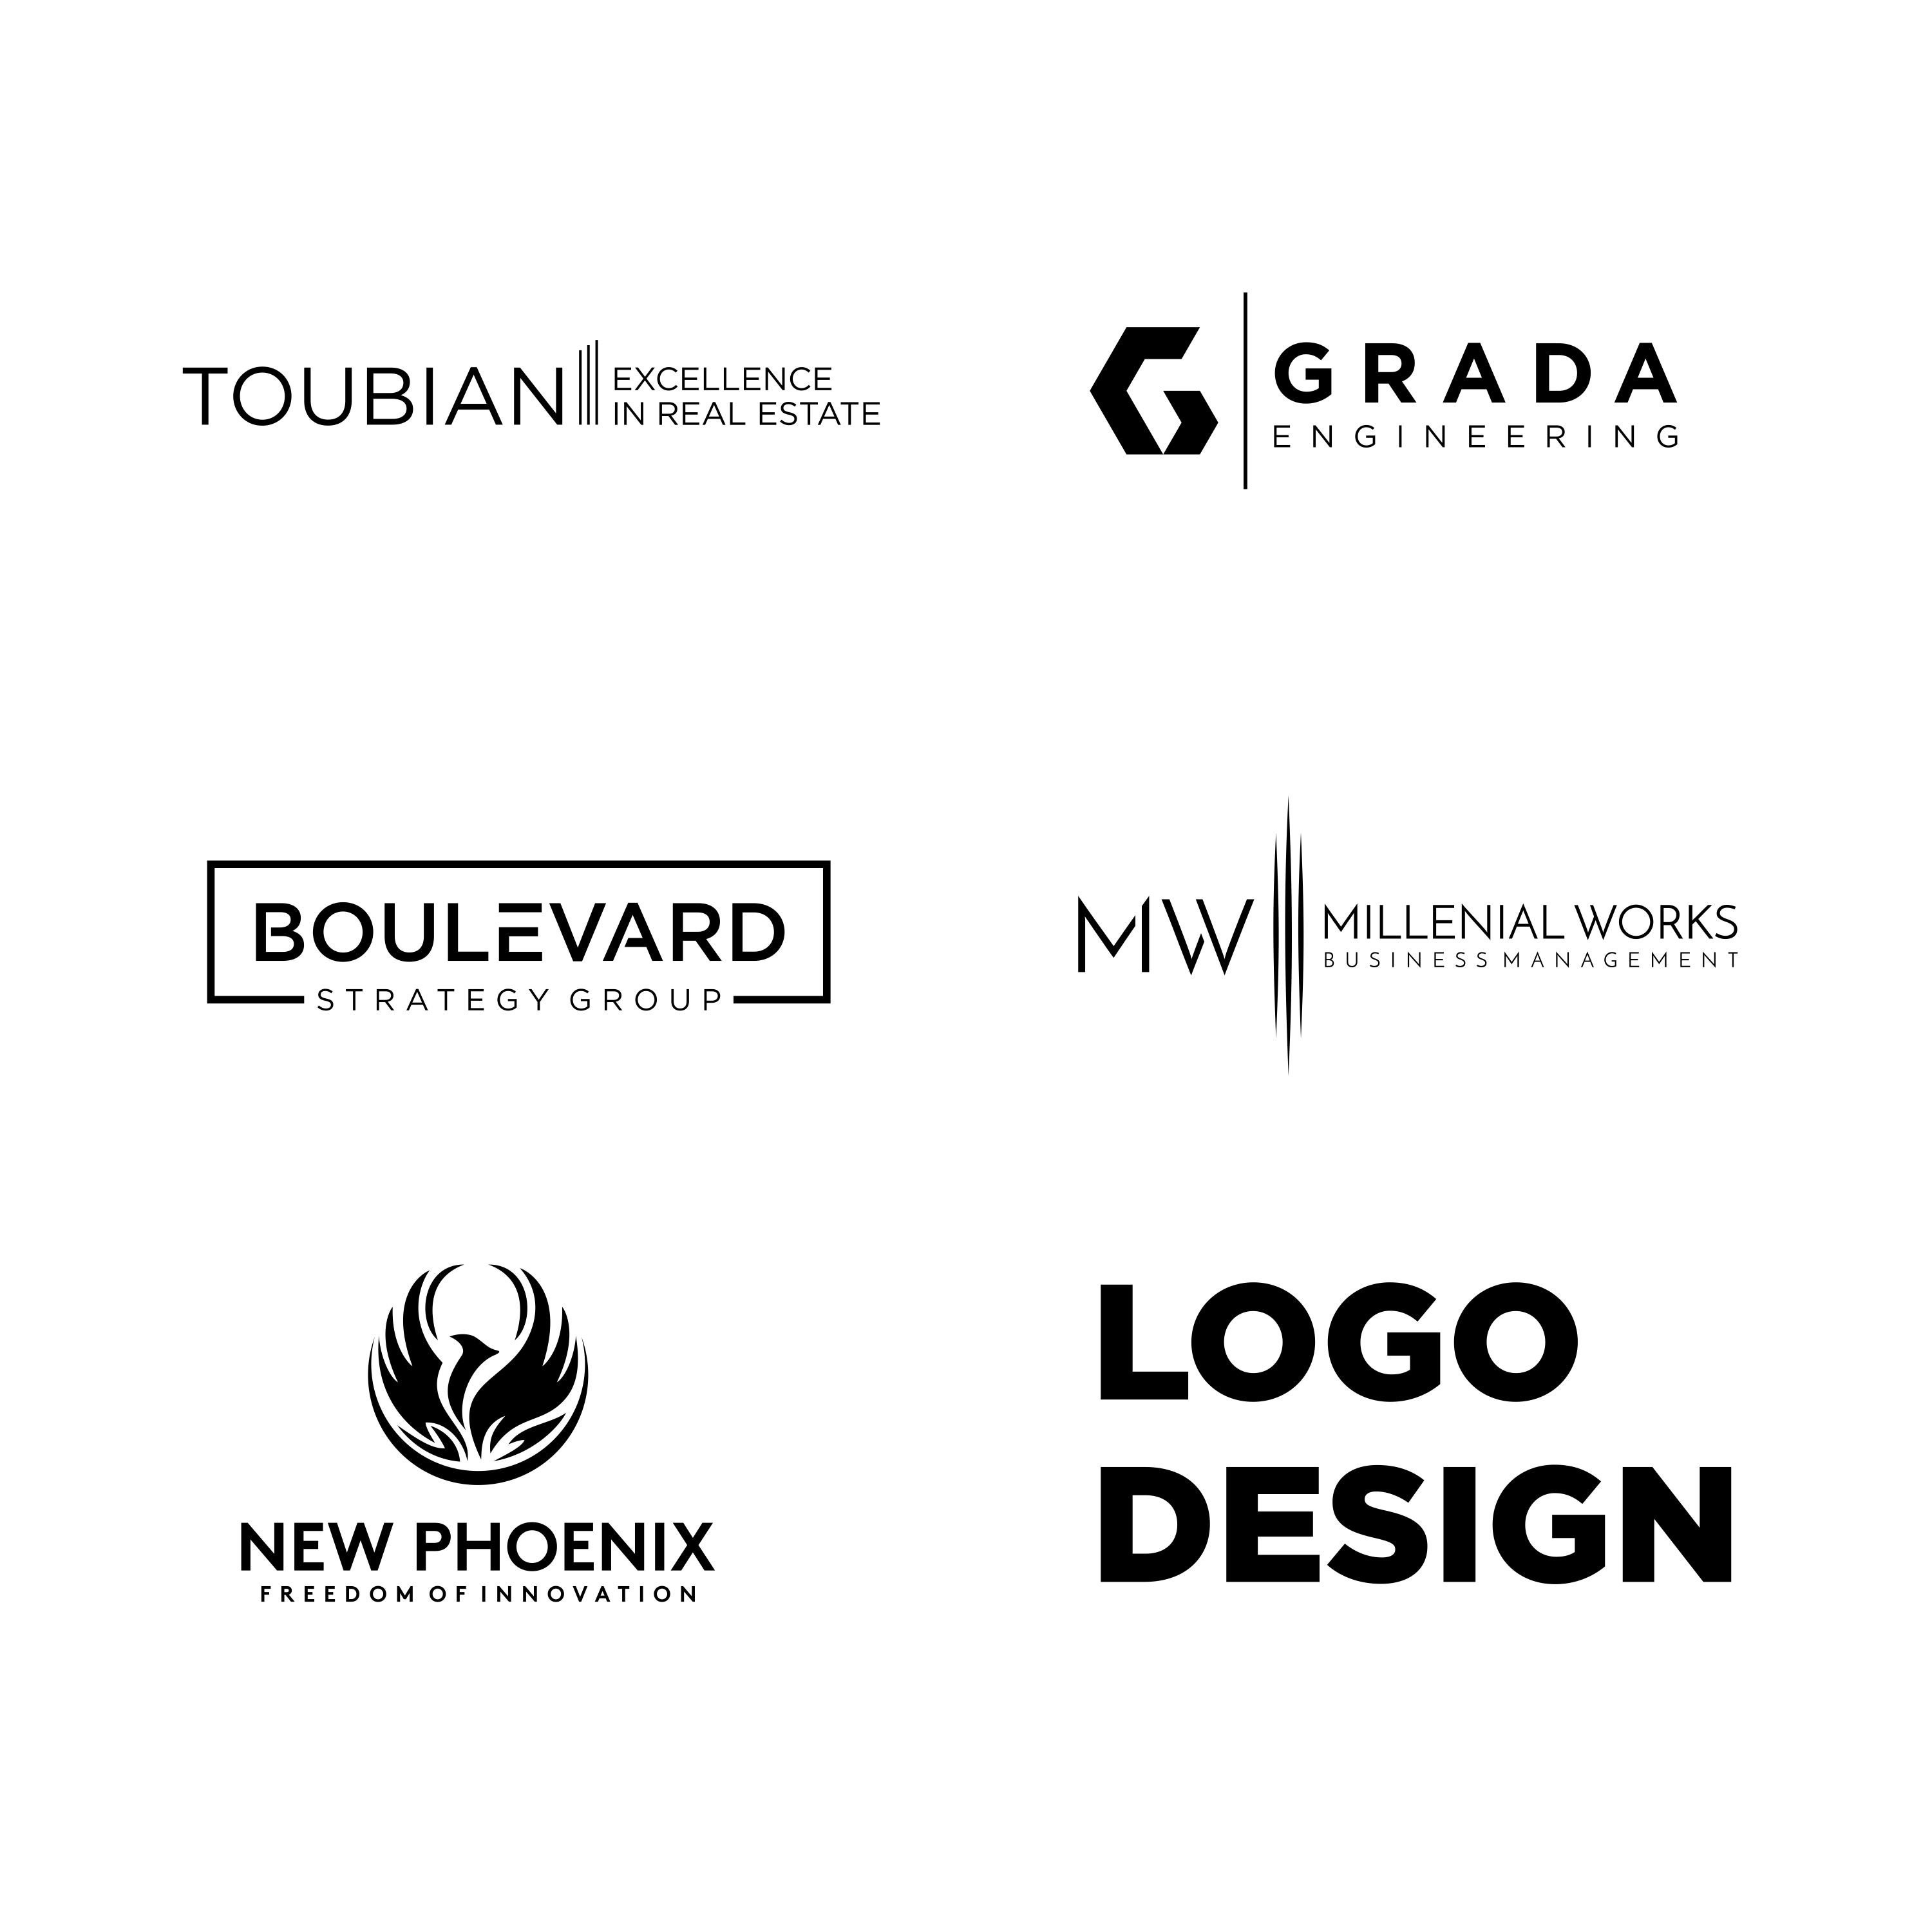 Logo Maker, Logo Design Custom, Custom Logo Design Branding, Boho